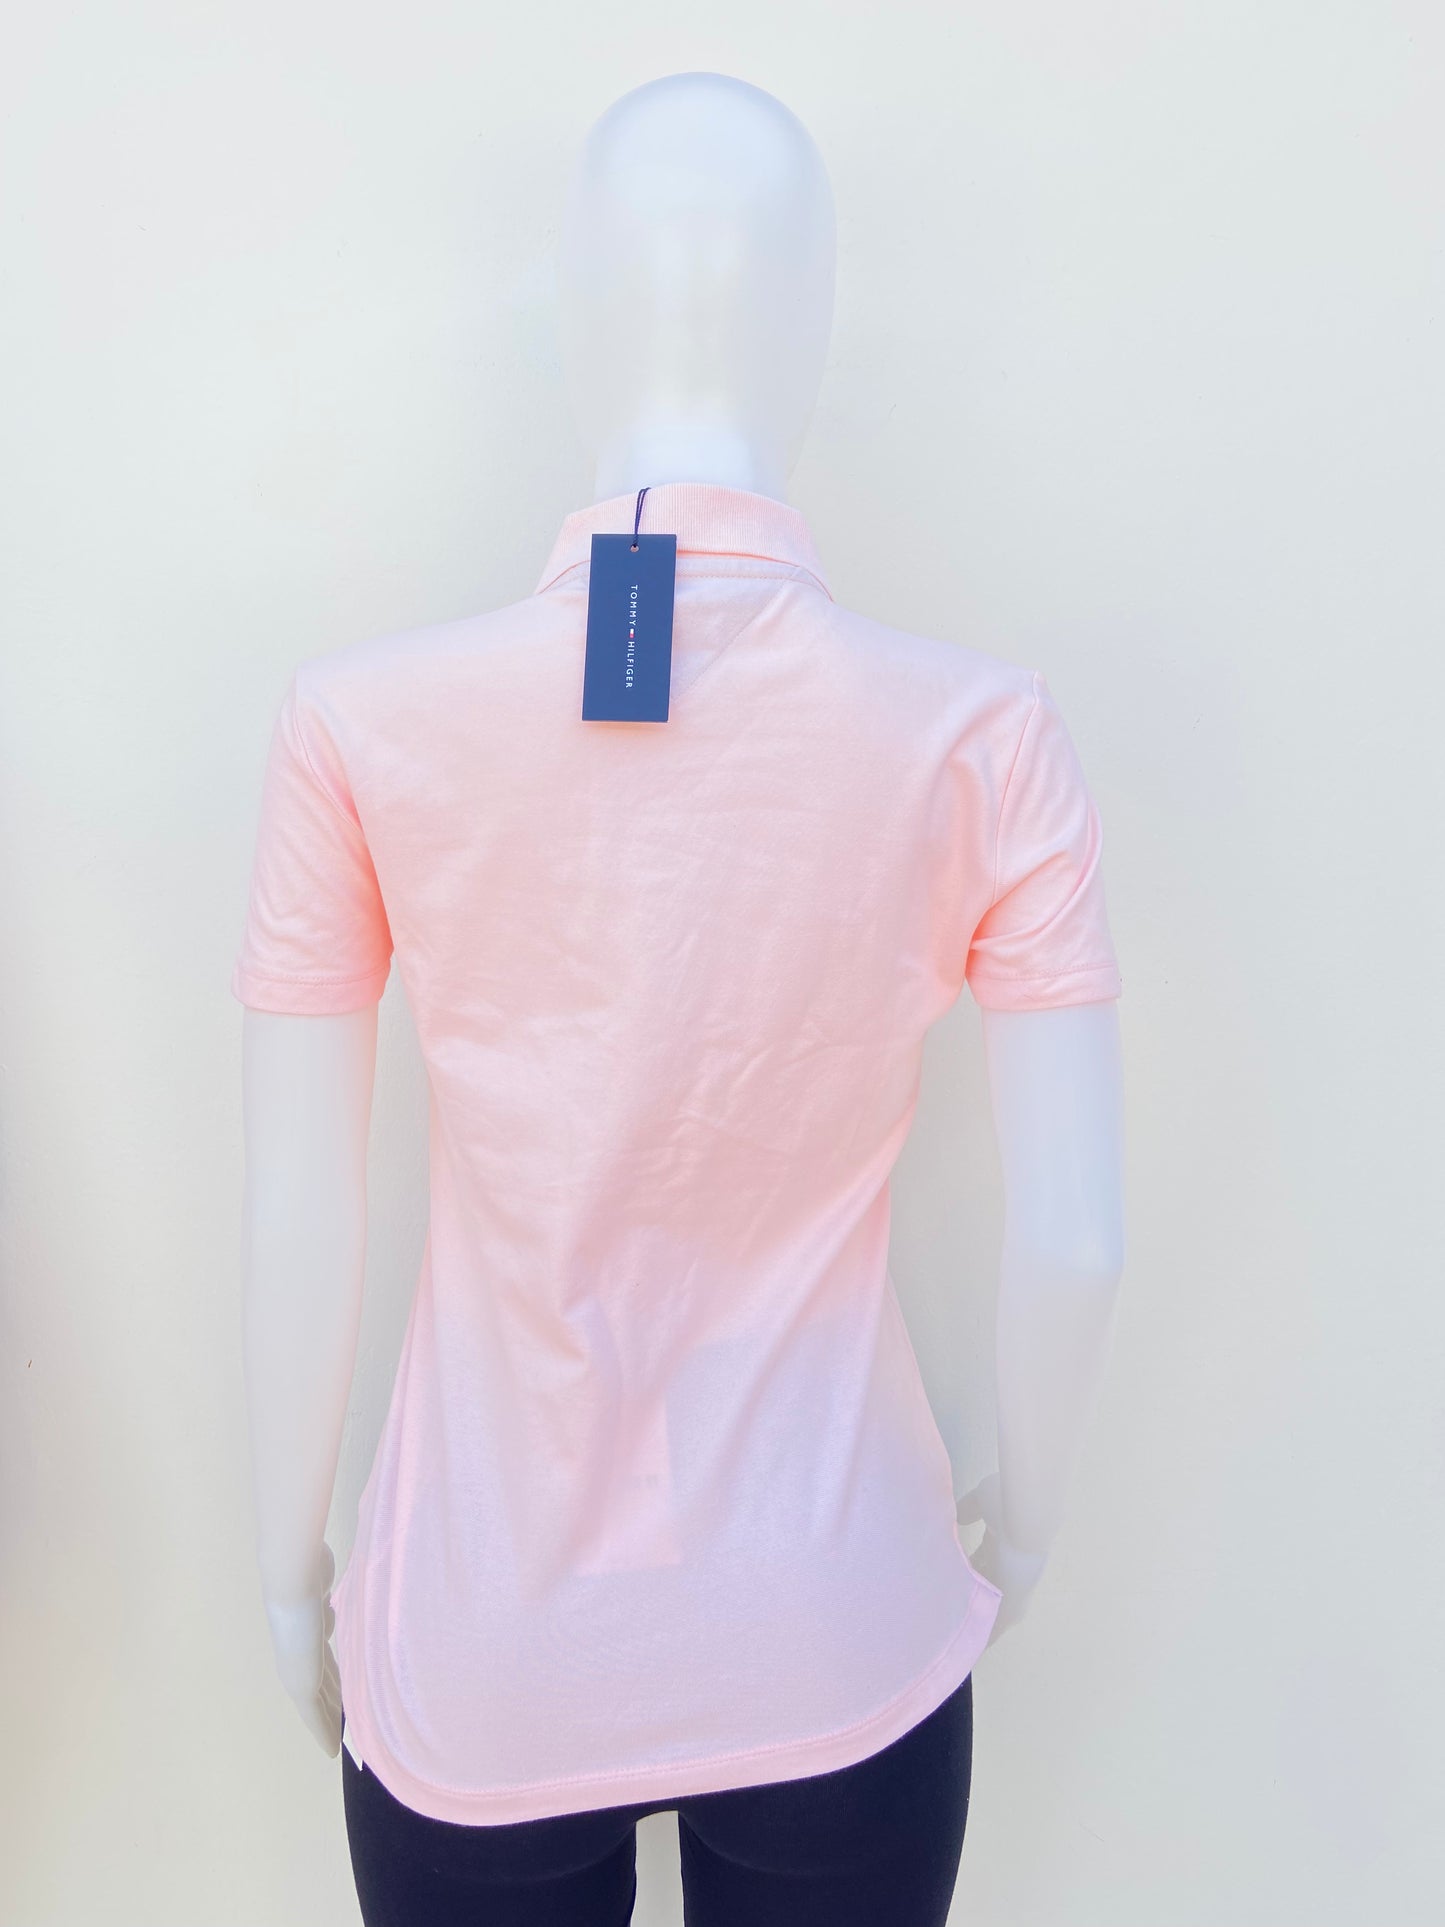 Polocher Tommy Hilfiger original rosado claro con botones en frente y logotipo de la marca.